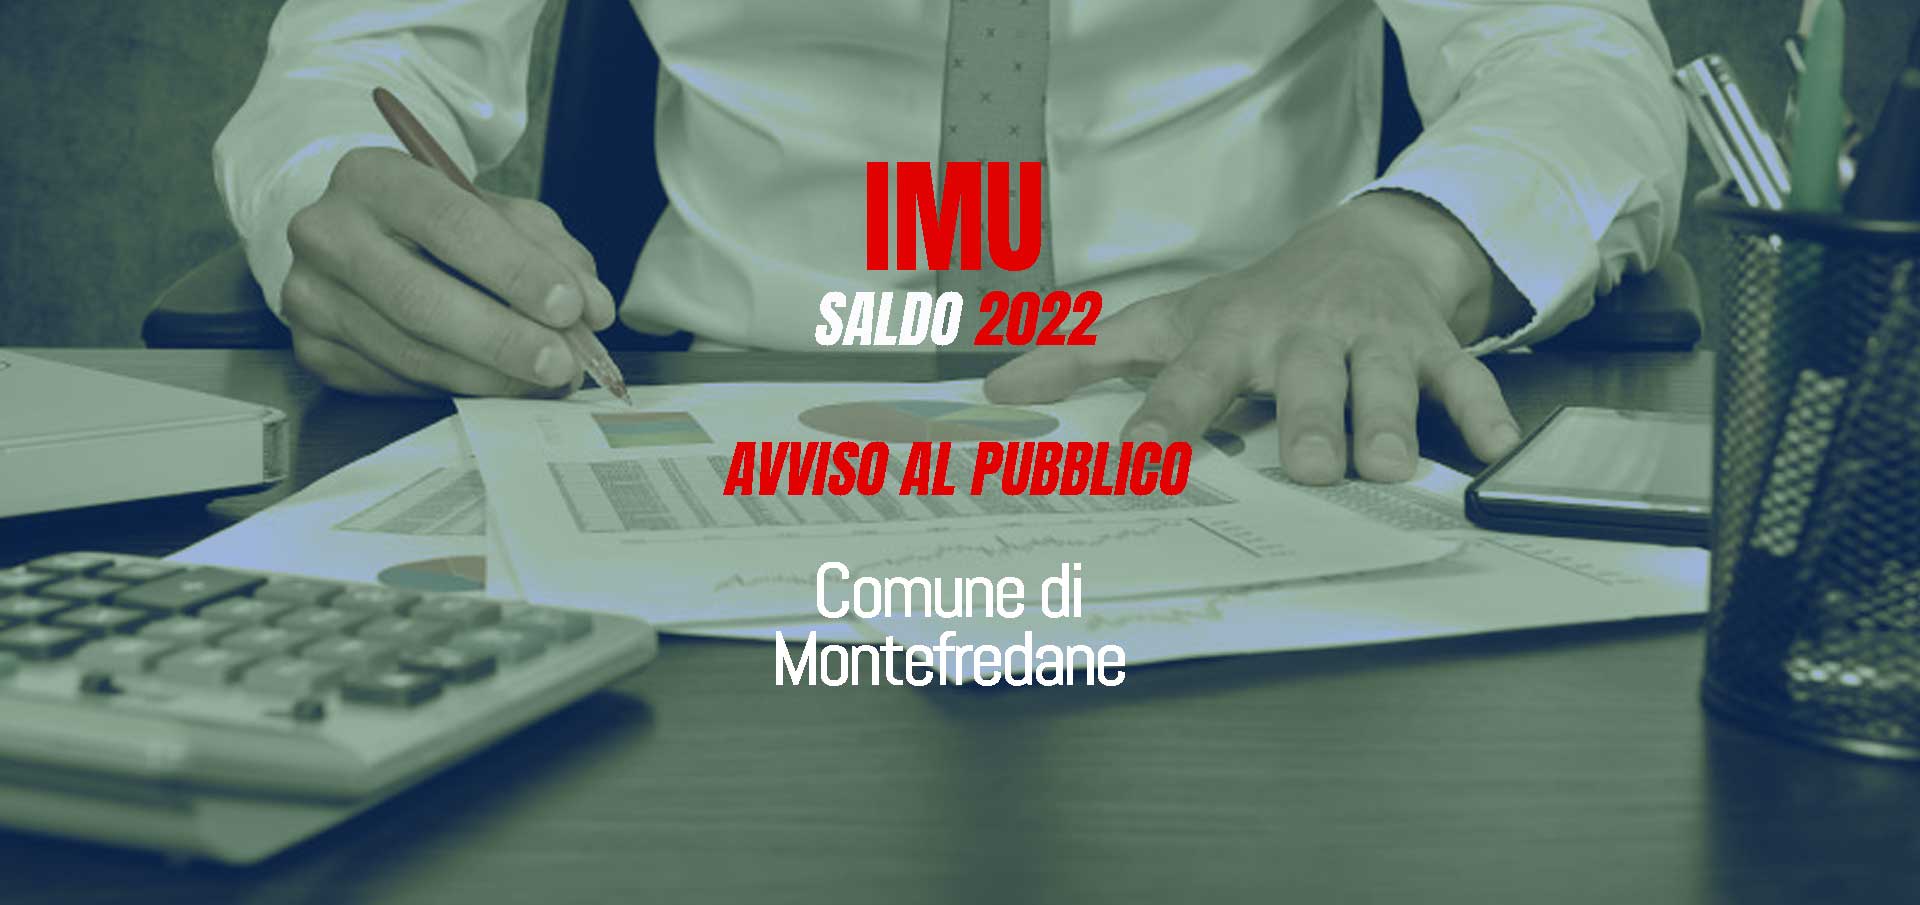 SALDO IMU 2022 – Comune di Montefredane